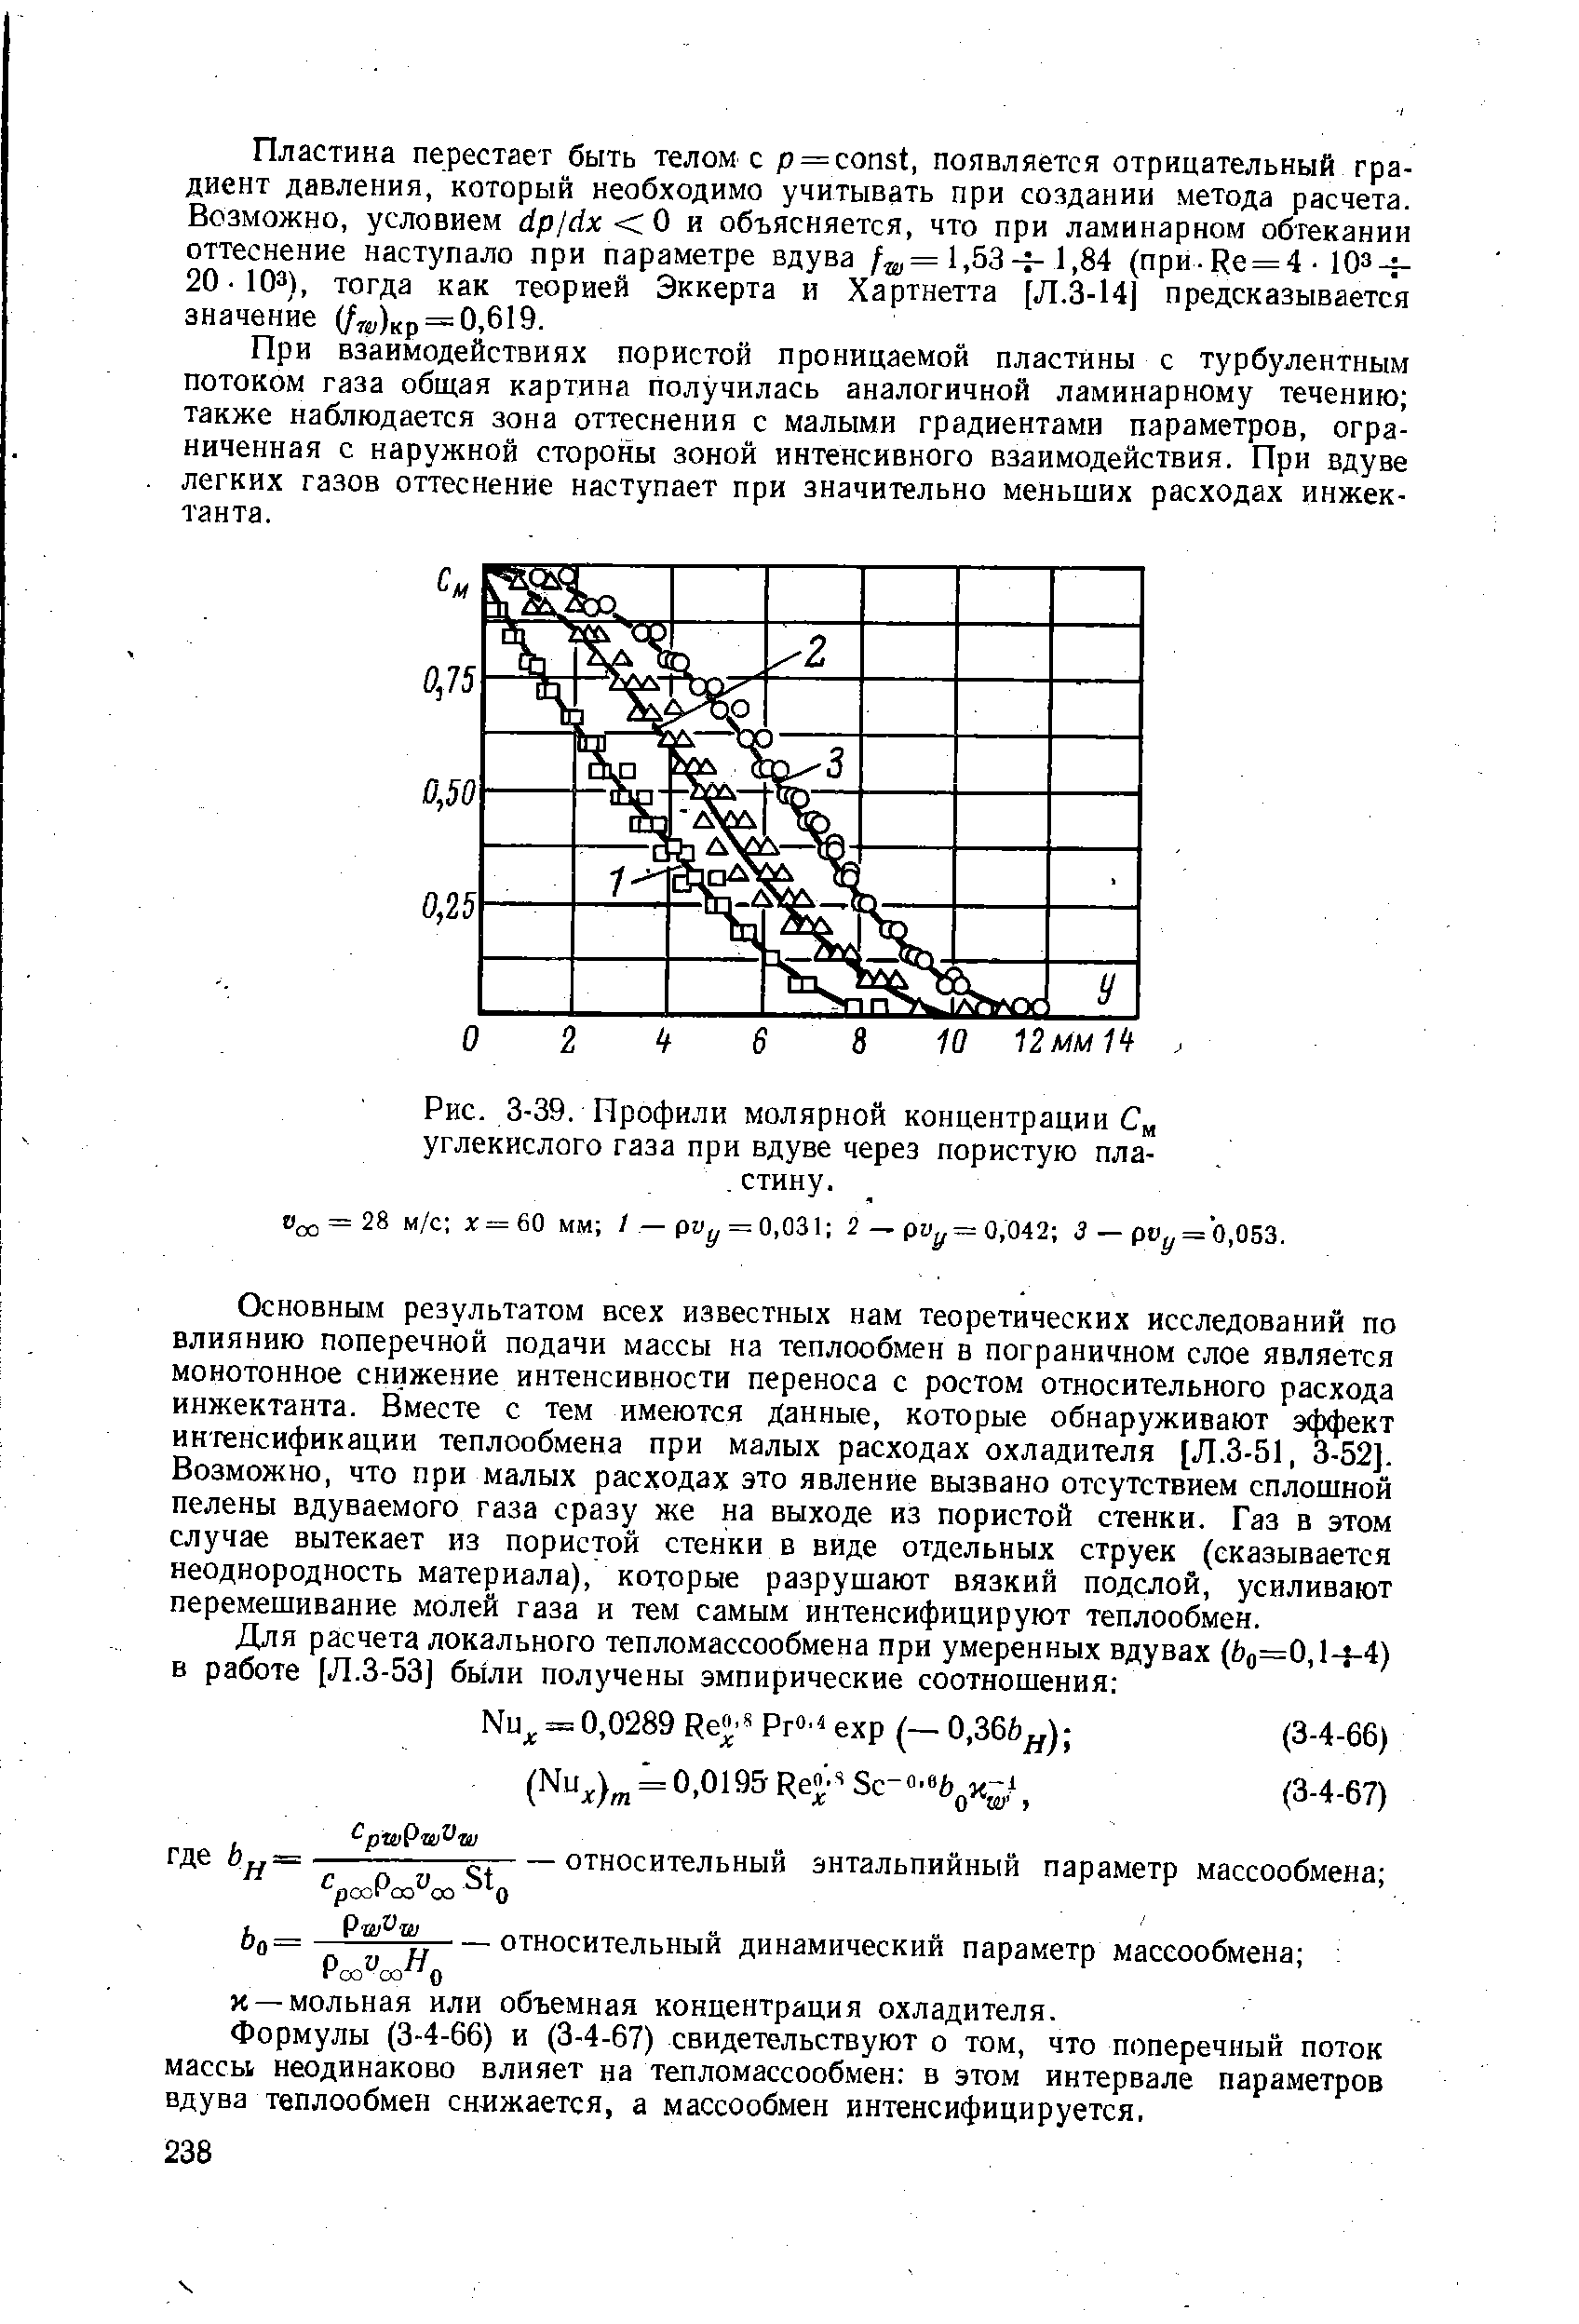 Рис. 3-39, Профили <a href="/info/18874">молярной концентрации</a> С углекислого газа при вдуве через пористую пла-. стину.
